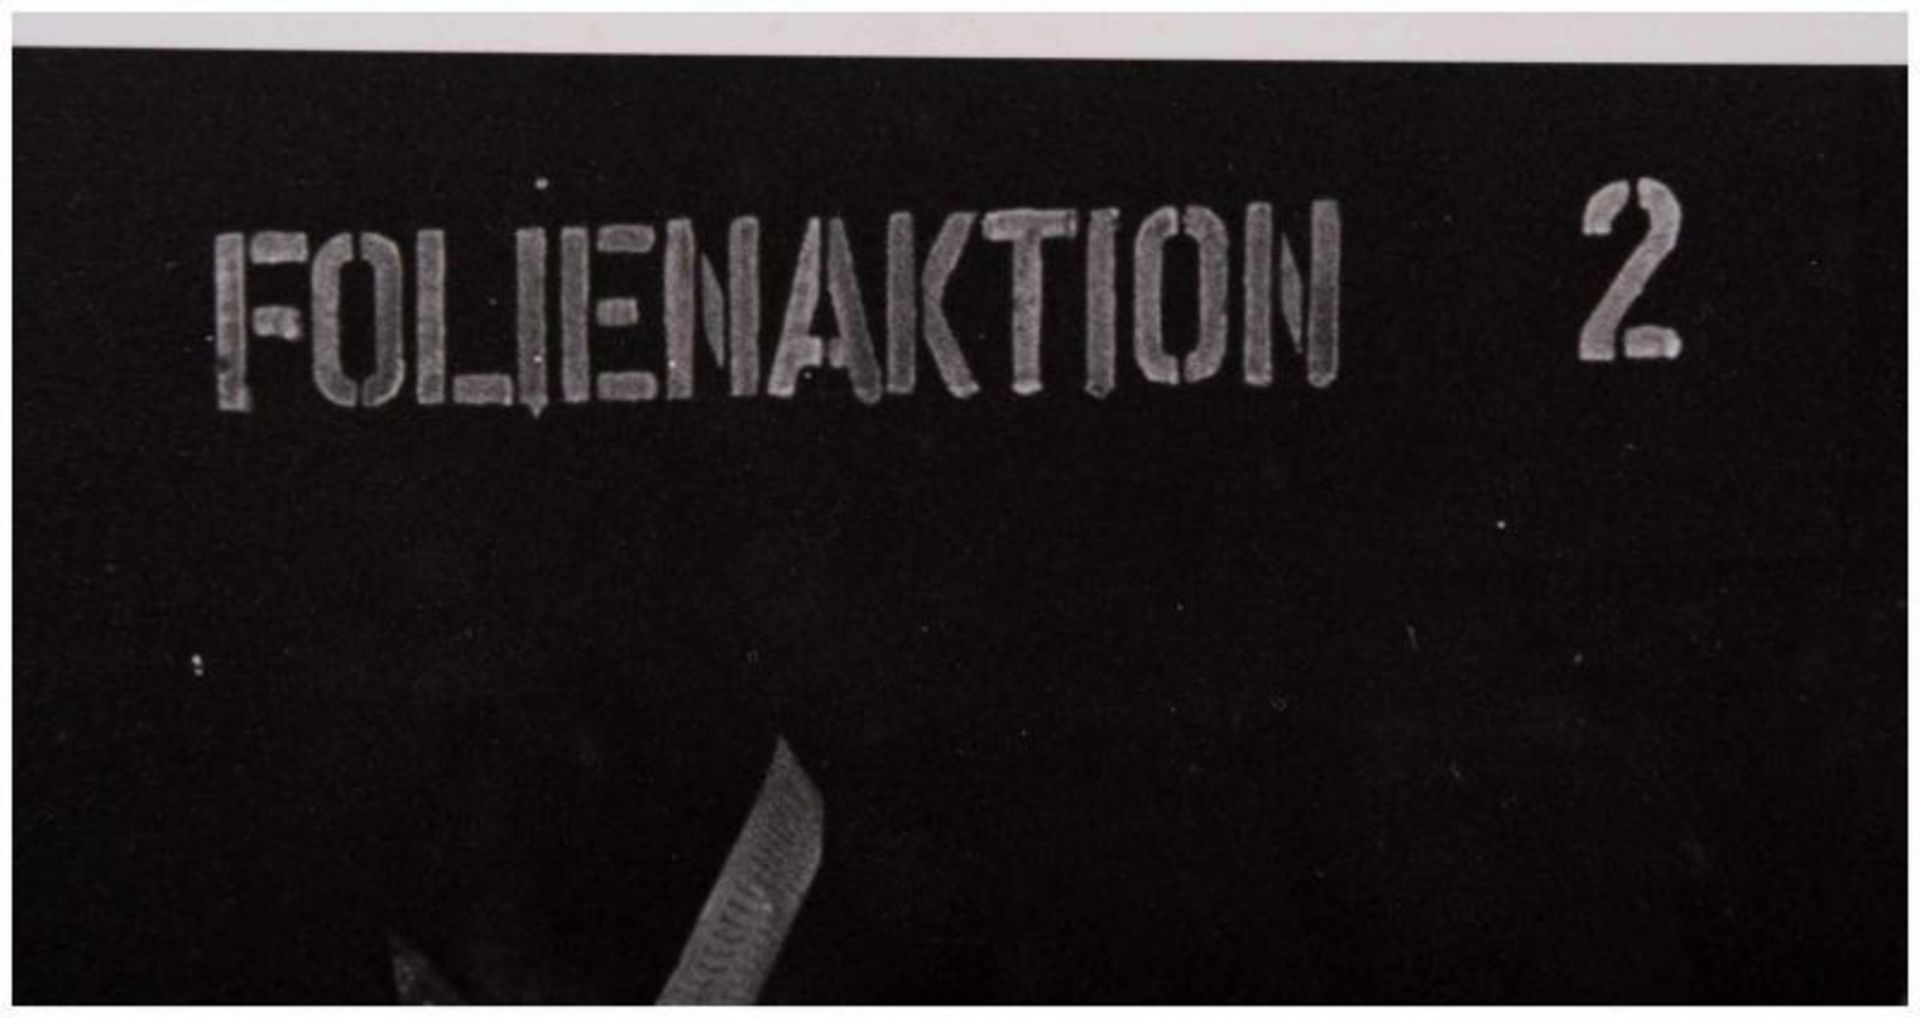 Klaus TOBER (1950-1994) - "Folienaktion 2" - Fotografie, 30,1 cm x 40,4 cm, - [...] - Image 4 of 6